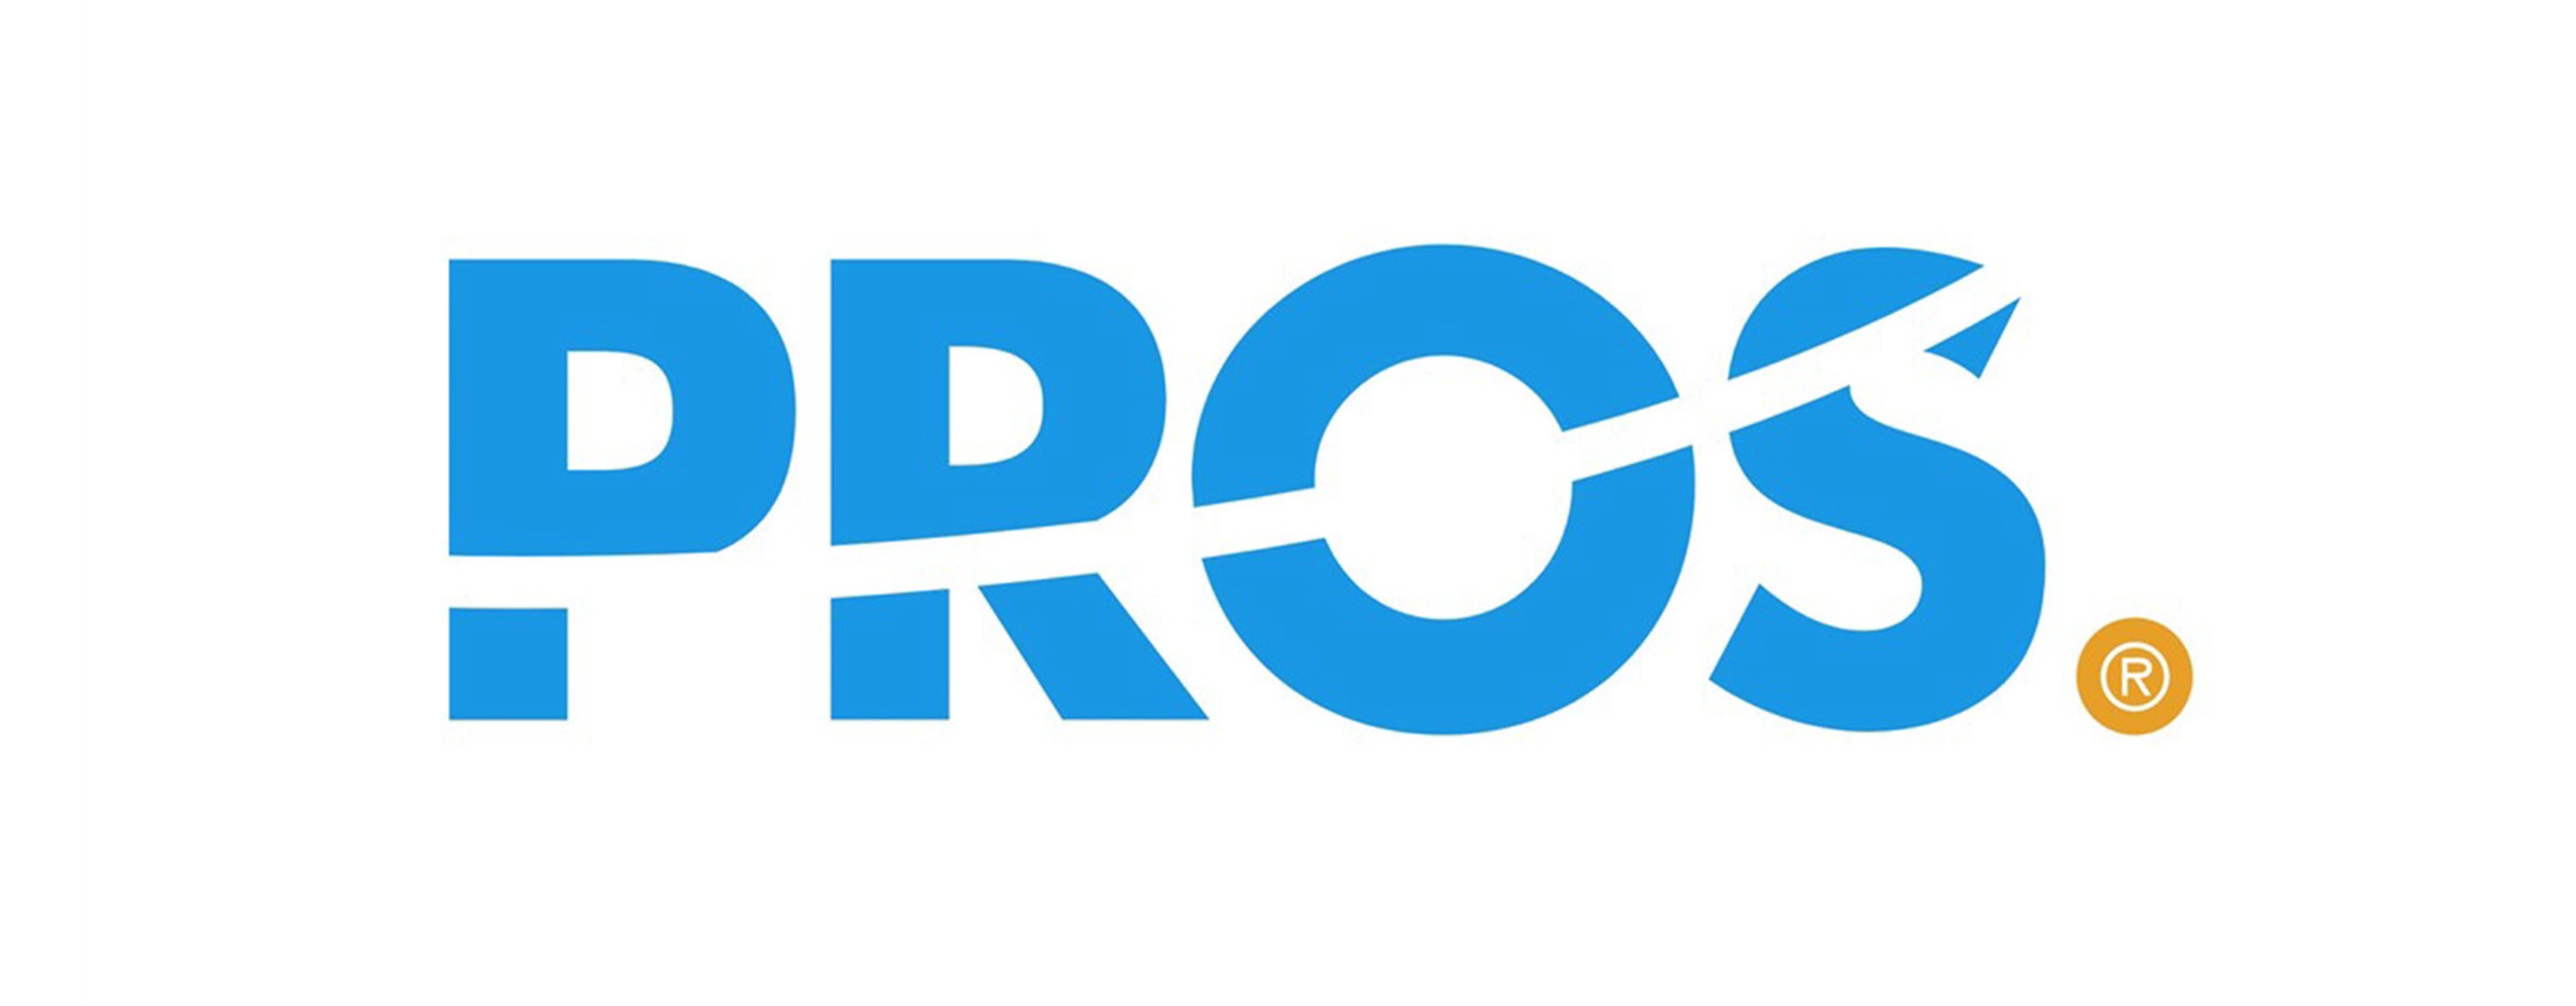             Logo Pros        